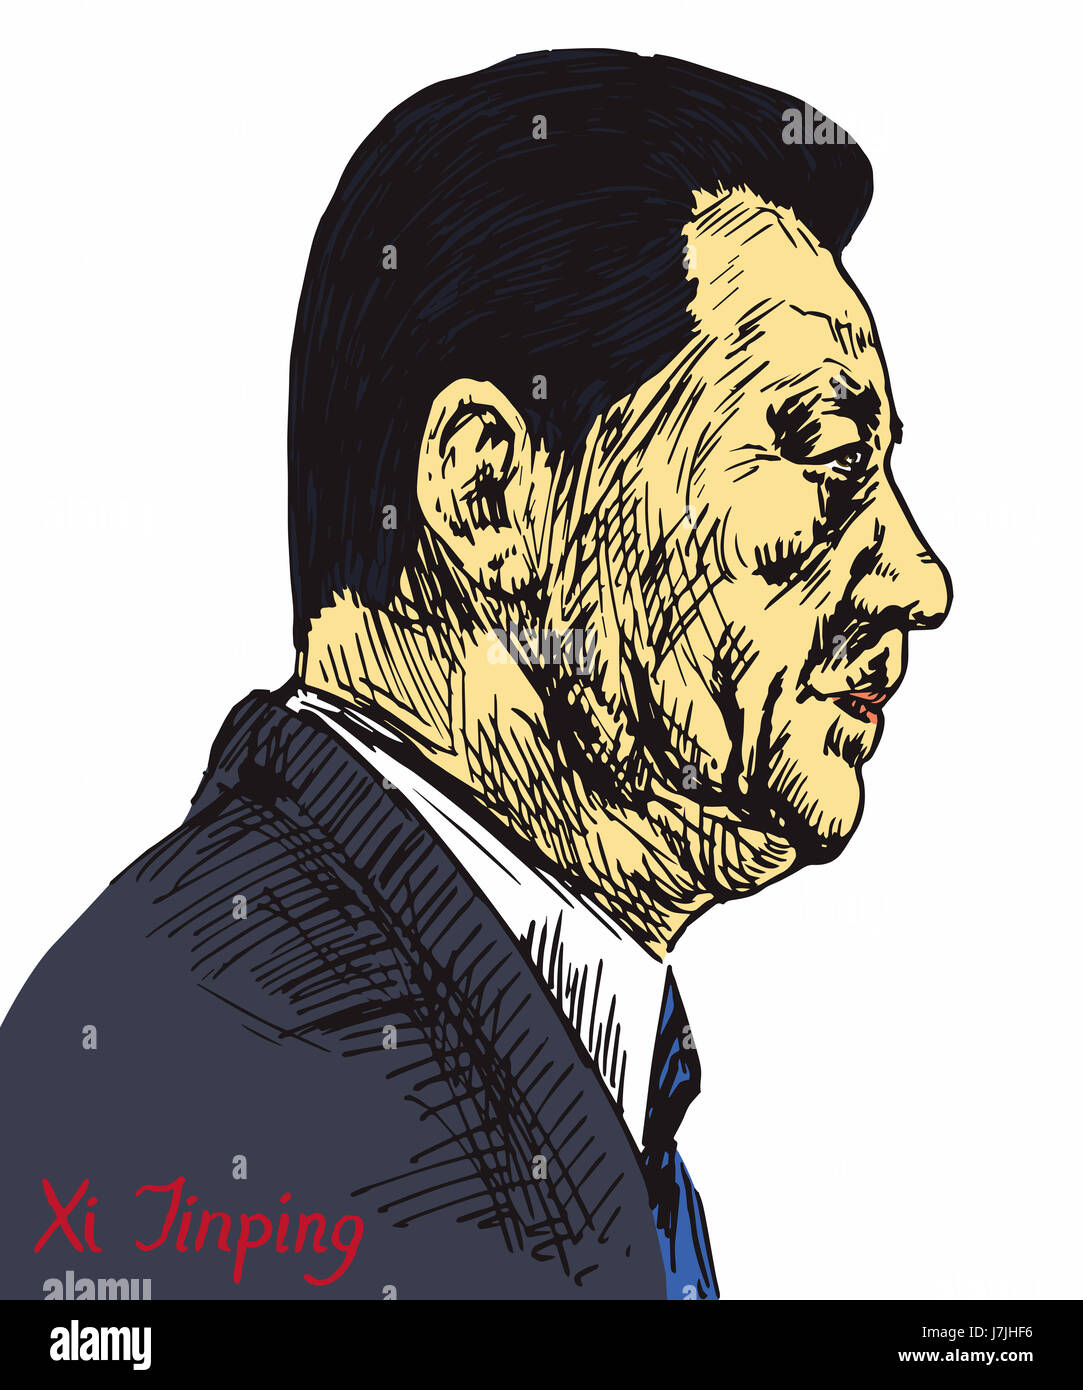 Xi Jinping, Generalsekretär der kommunistischen Partei Chinas, Präsident der Volksrepublik China, von hand gezeichnet, Abbildung Stockfoto